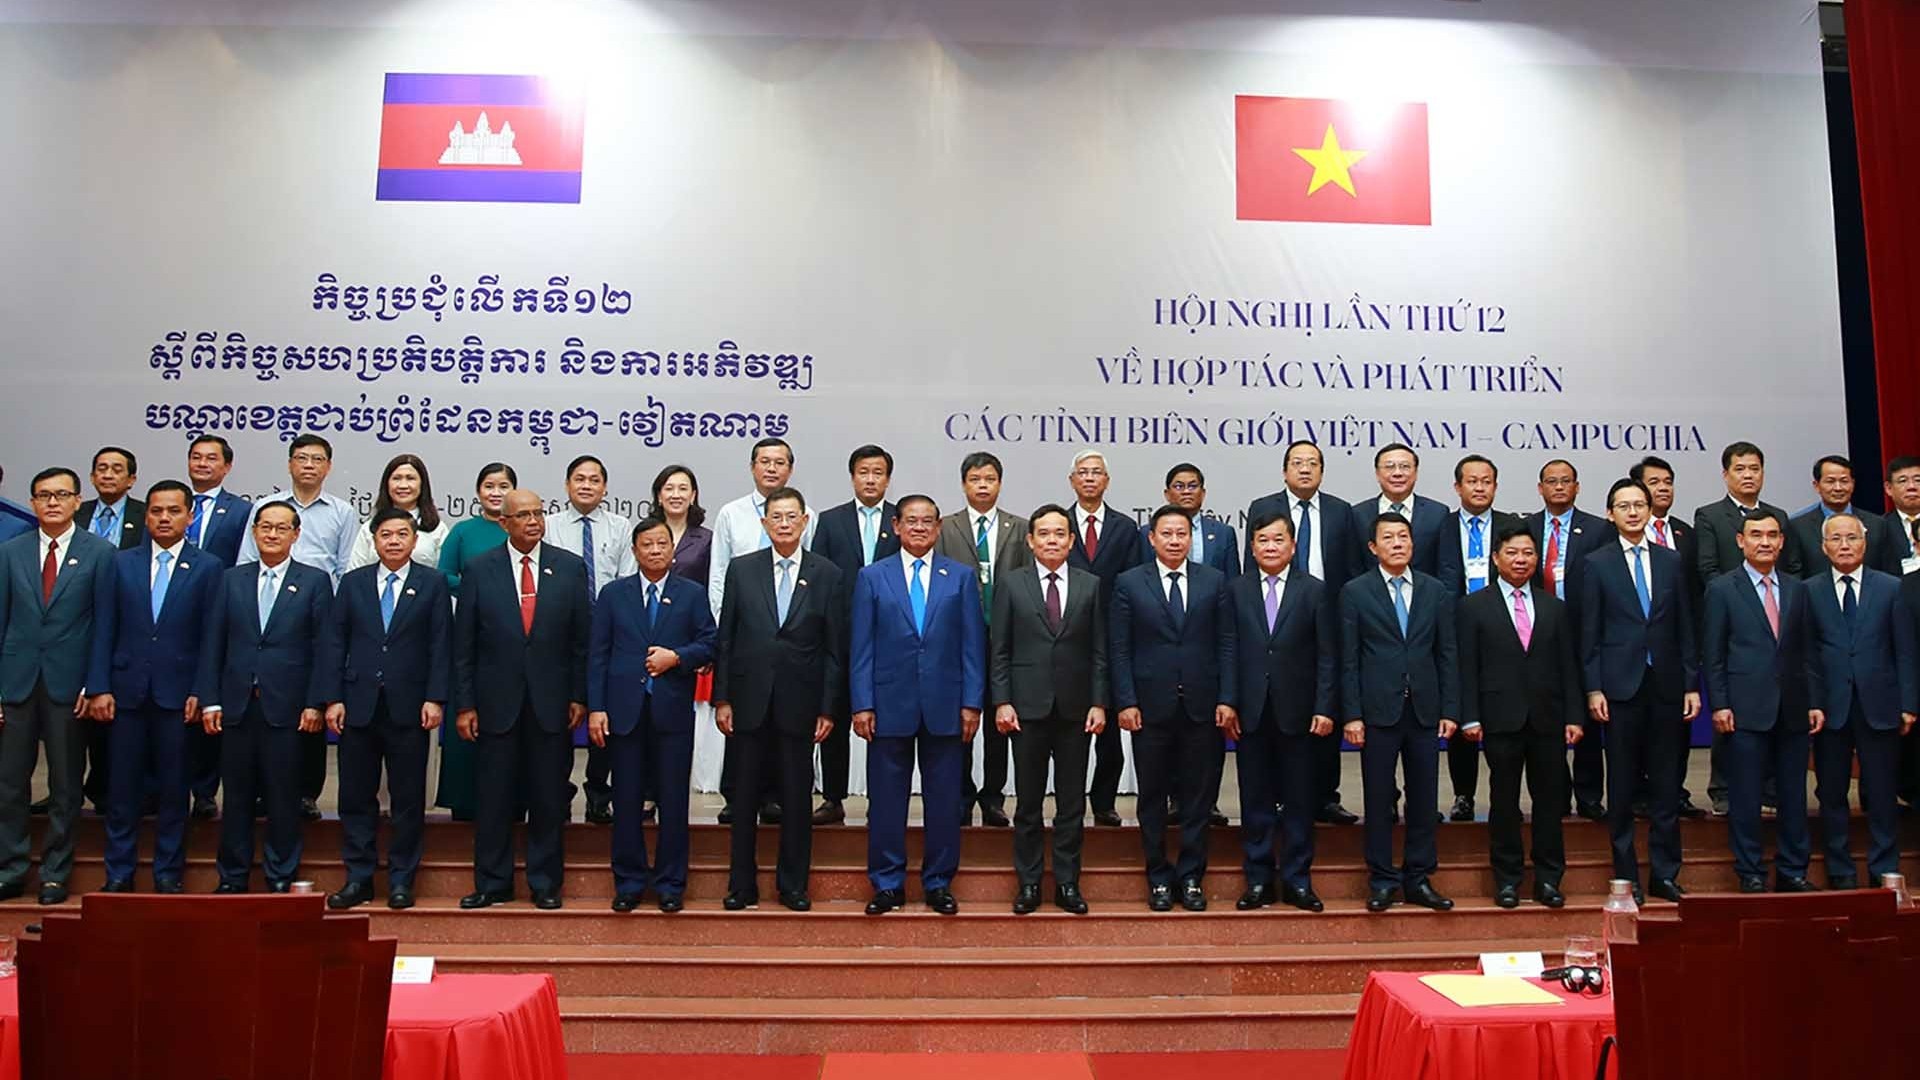 Thông cáo chung của Hội nghị hợp tác và phát triển các tỉnh biên giới Việt Nam-Campuchia lần thứ 12